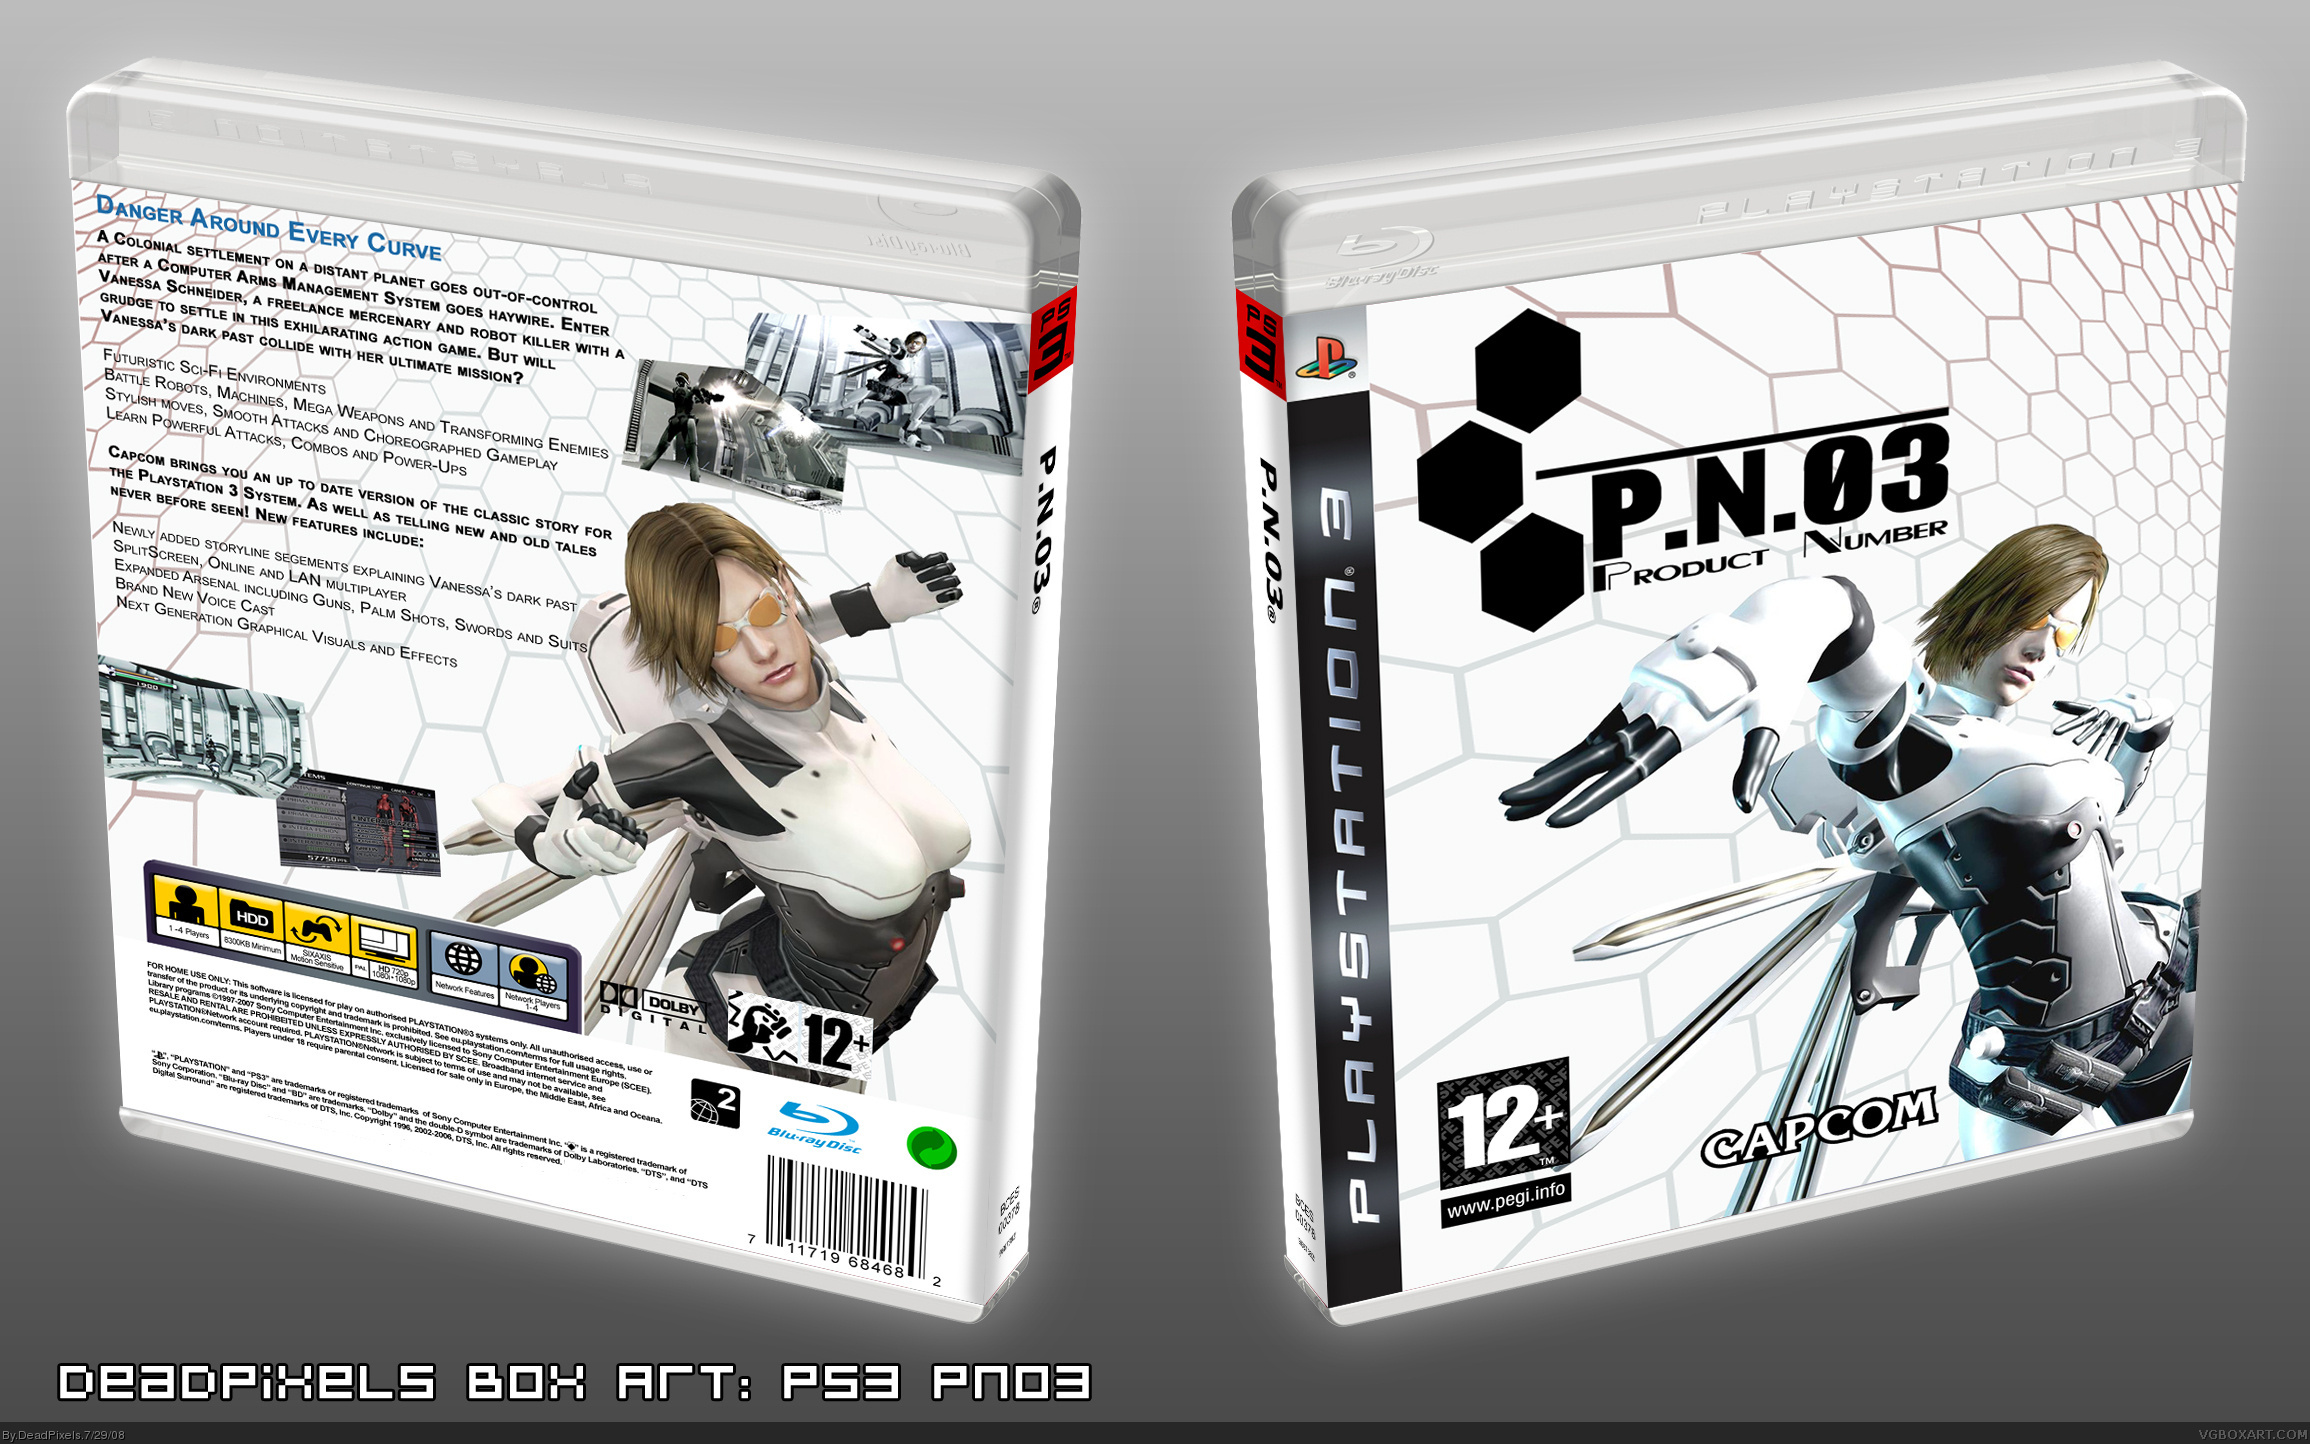 P.N.03 box cover